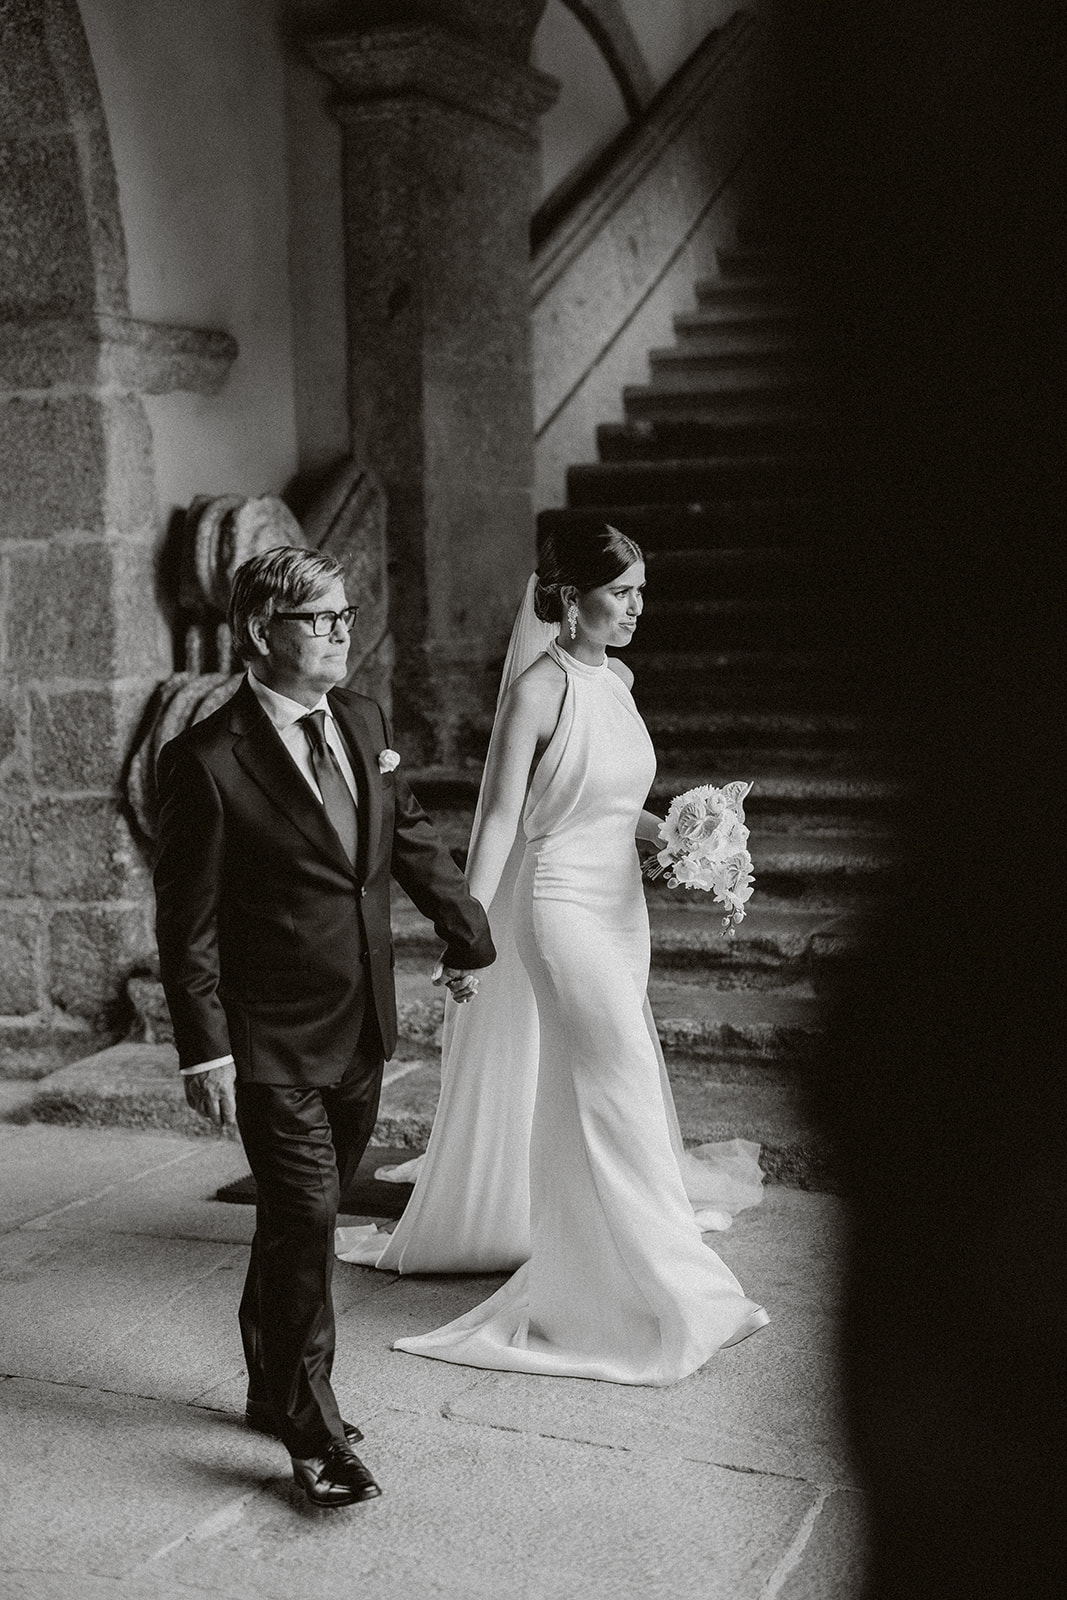 Modern Editorial wedding at a luxury hotel near porto portugal Europe.